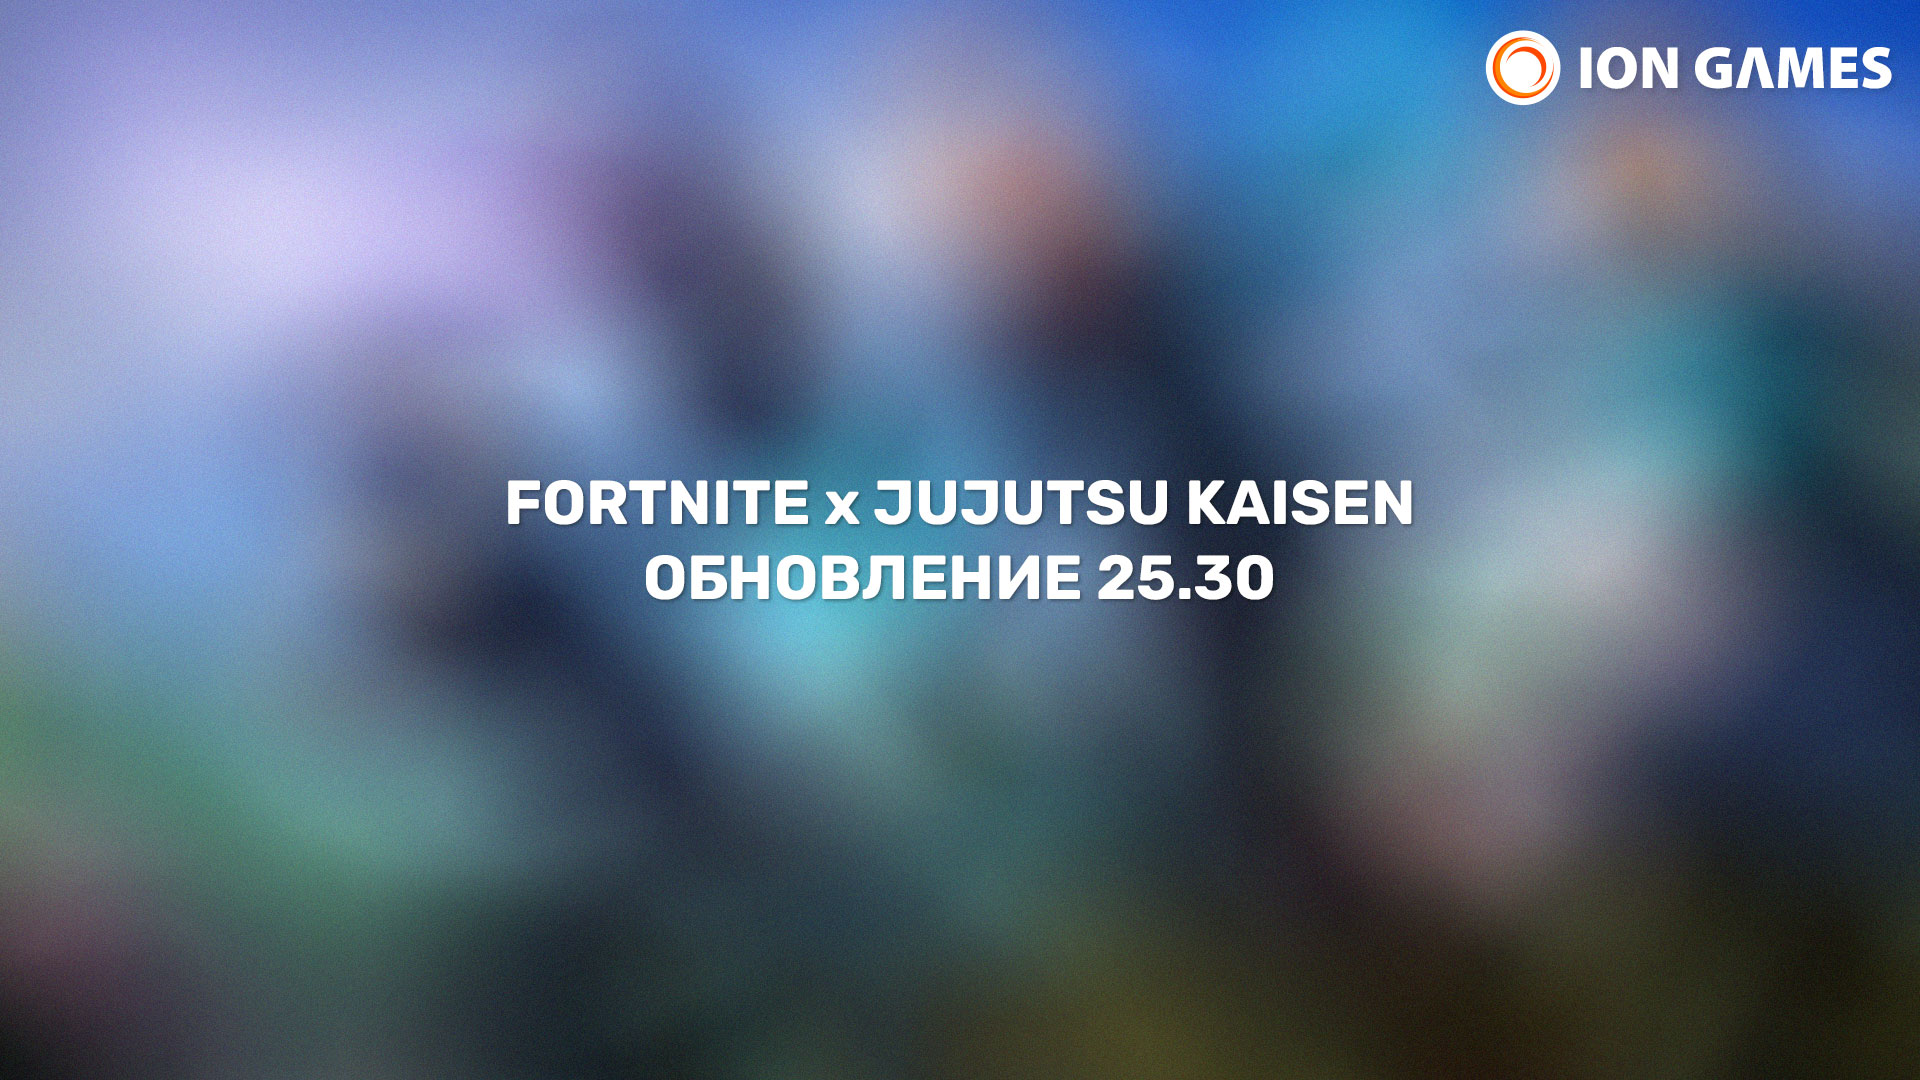 Fortnite x Jujutsu Kaisen - Обновление 25.30 в Fortnite